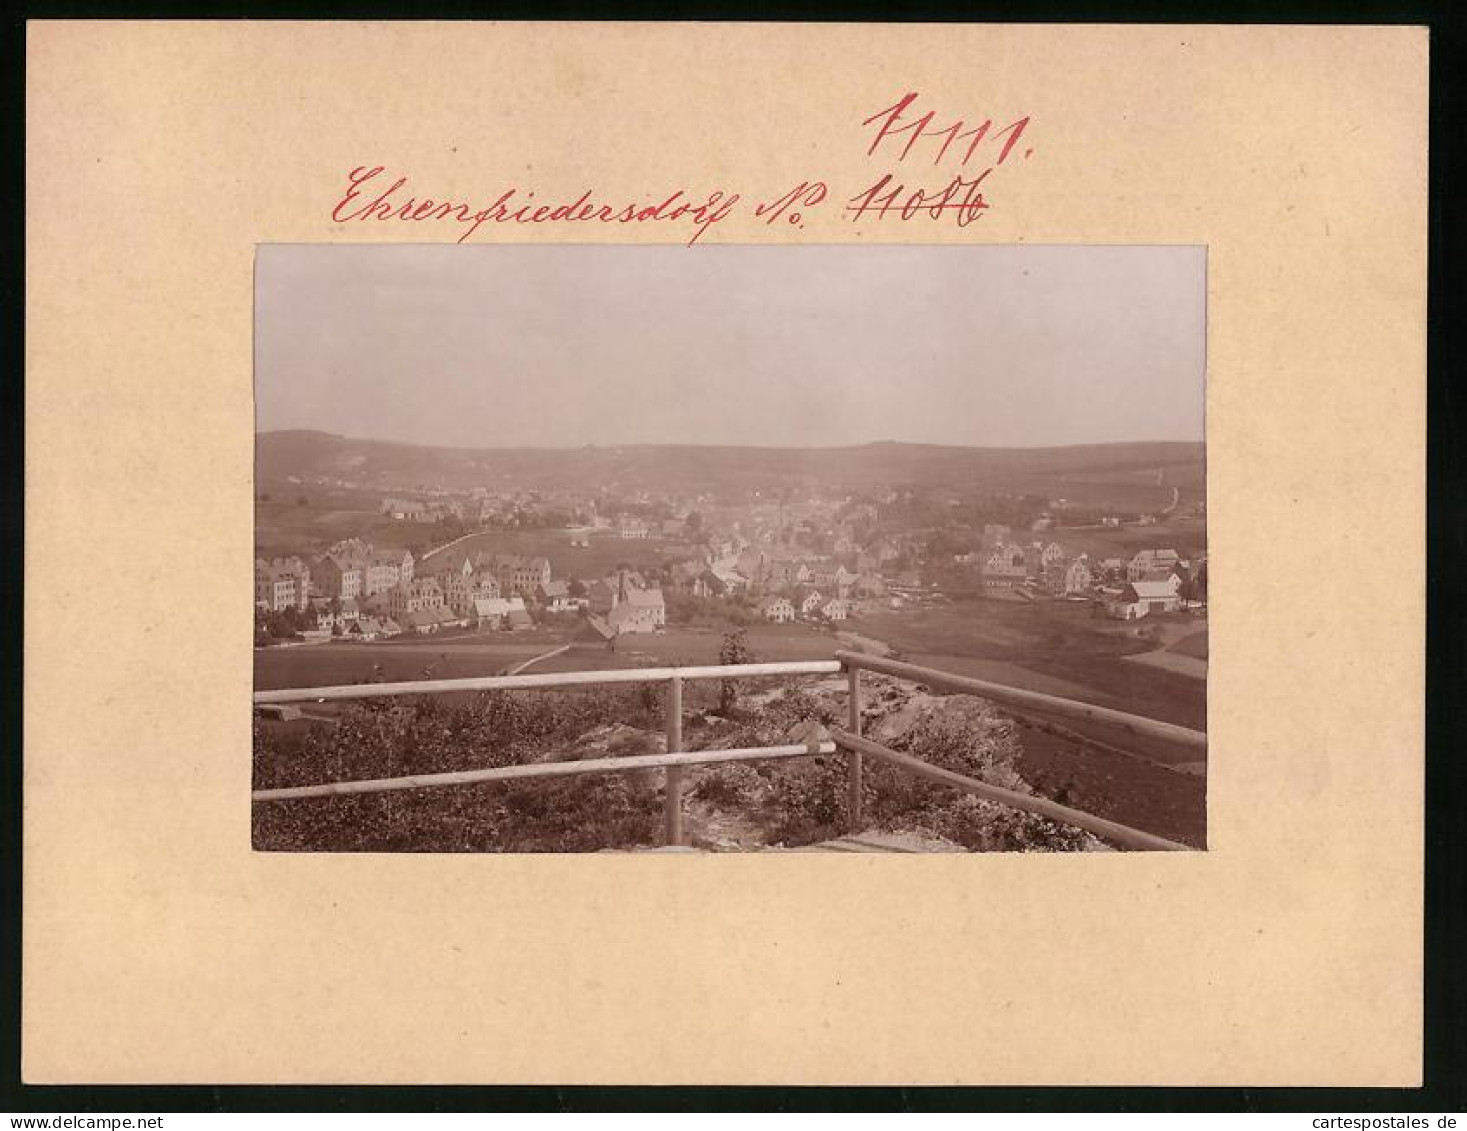 Fotografie Brück & Sohn Meissen, Ansicht Ehrenfriedersdorf, Blick Von Einem Aussichtspunkt  - Lugares